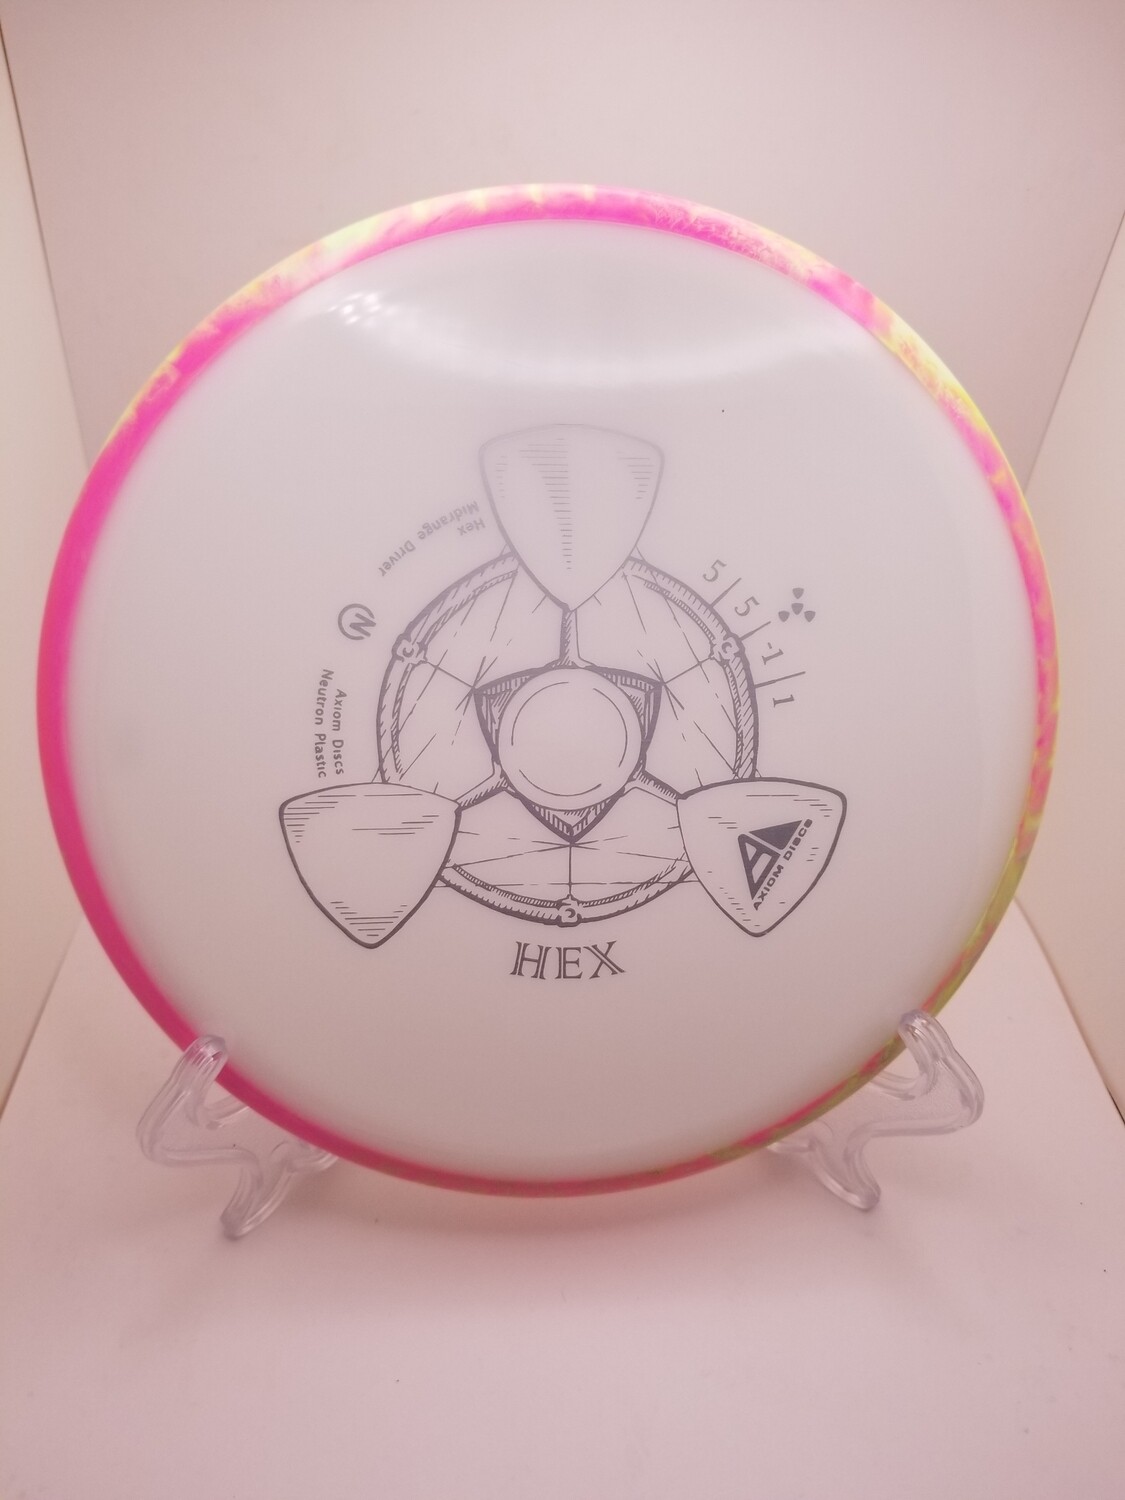 Axiom Discs Hex Neutron White Plate Pink/yellow swirl Rim 177g